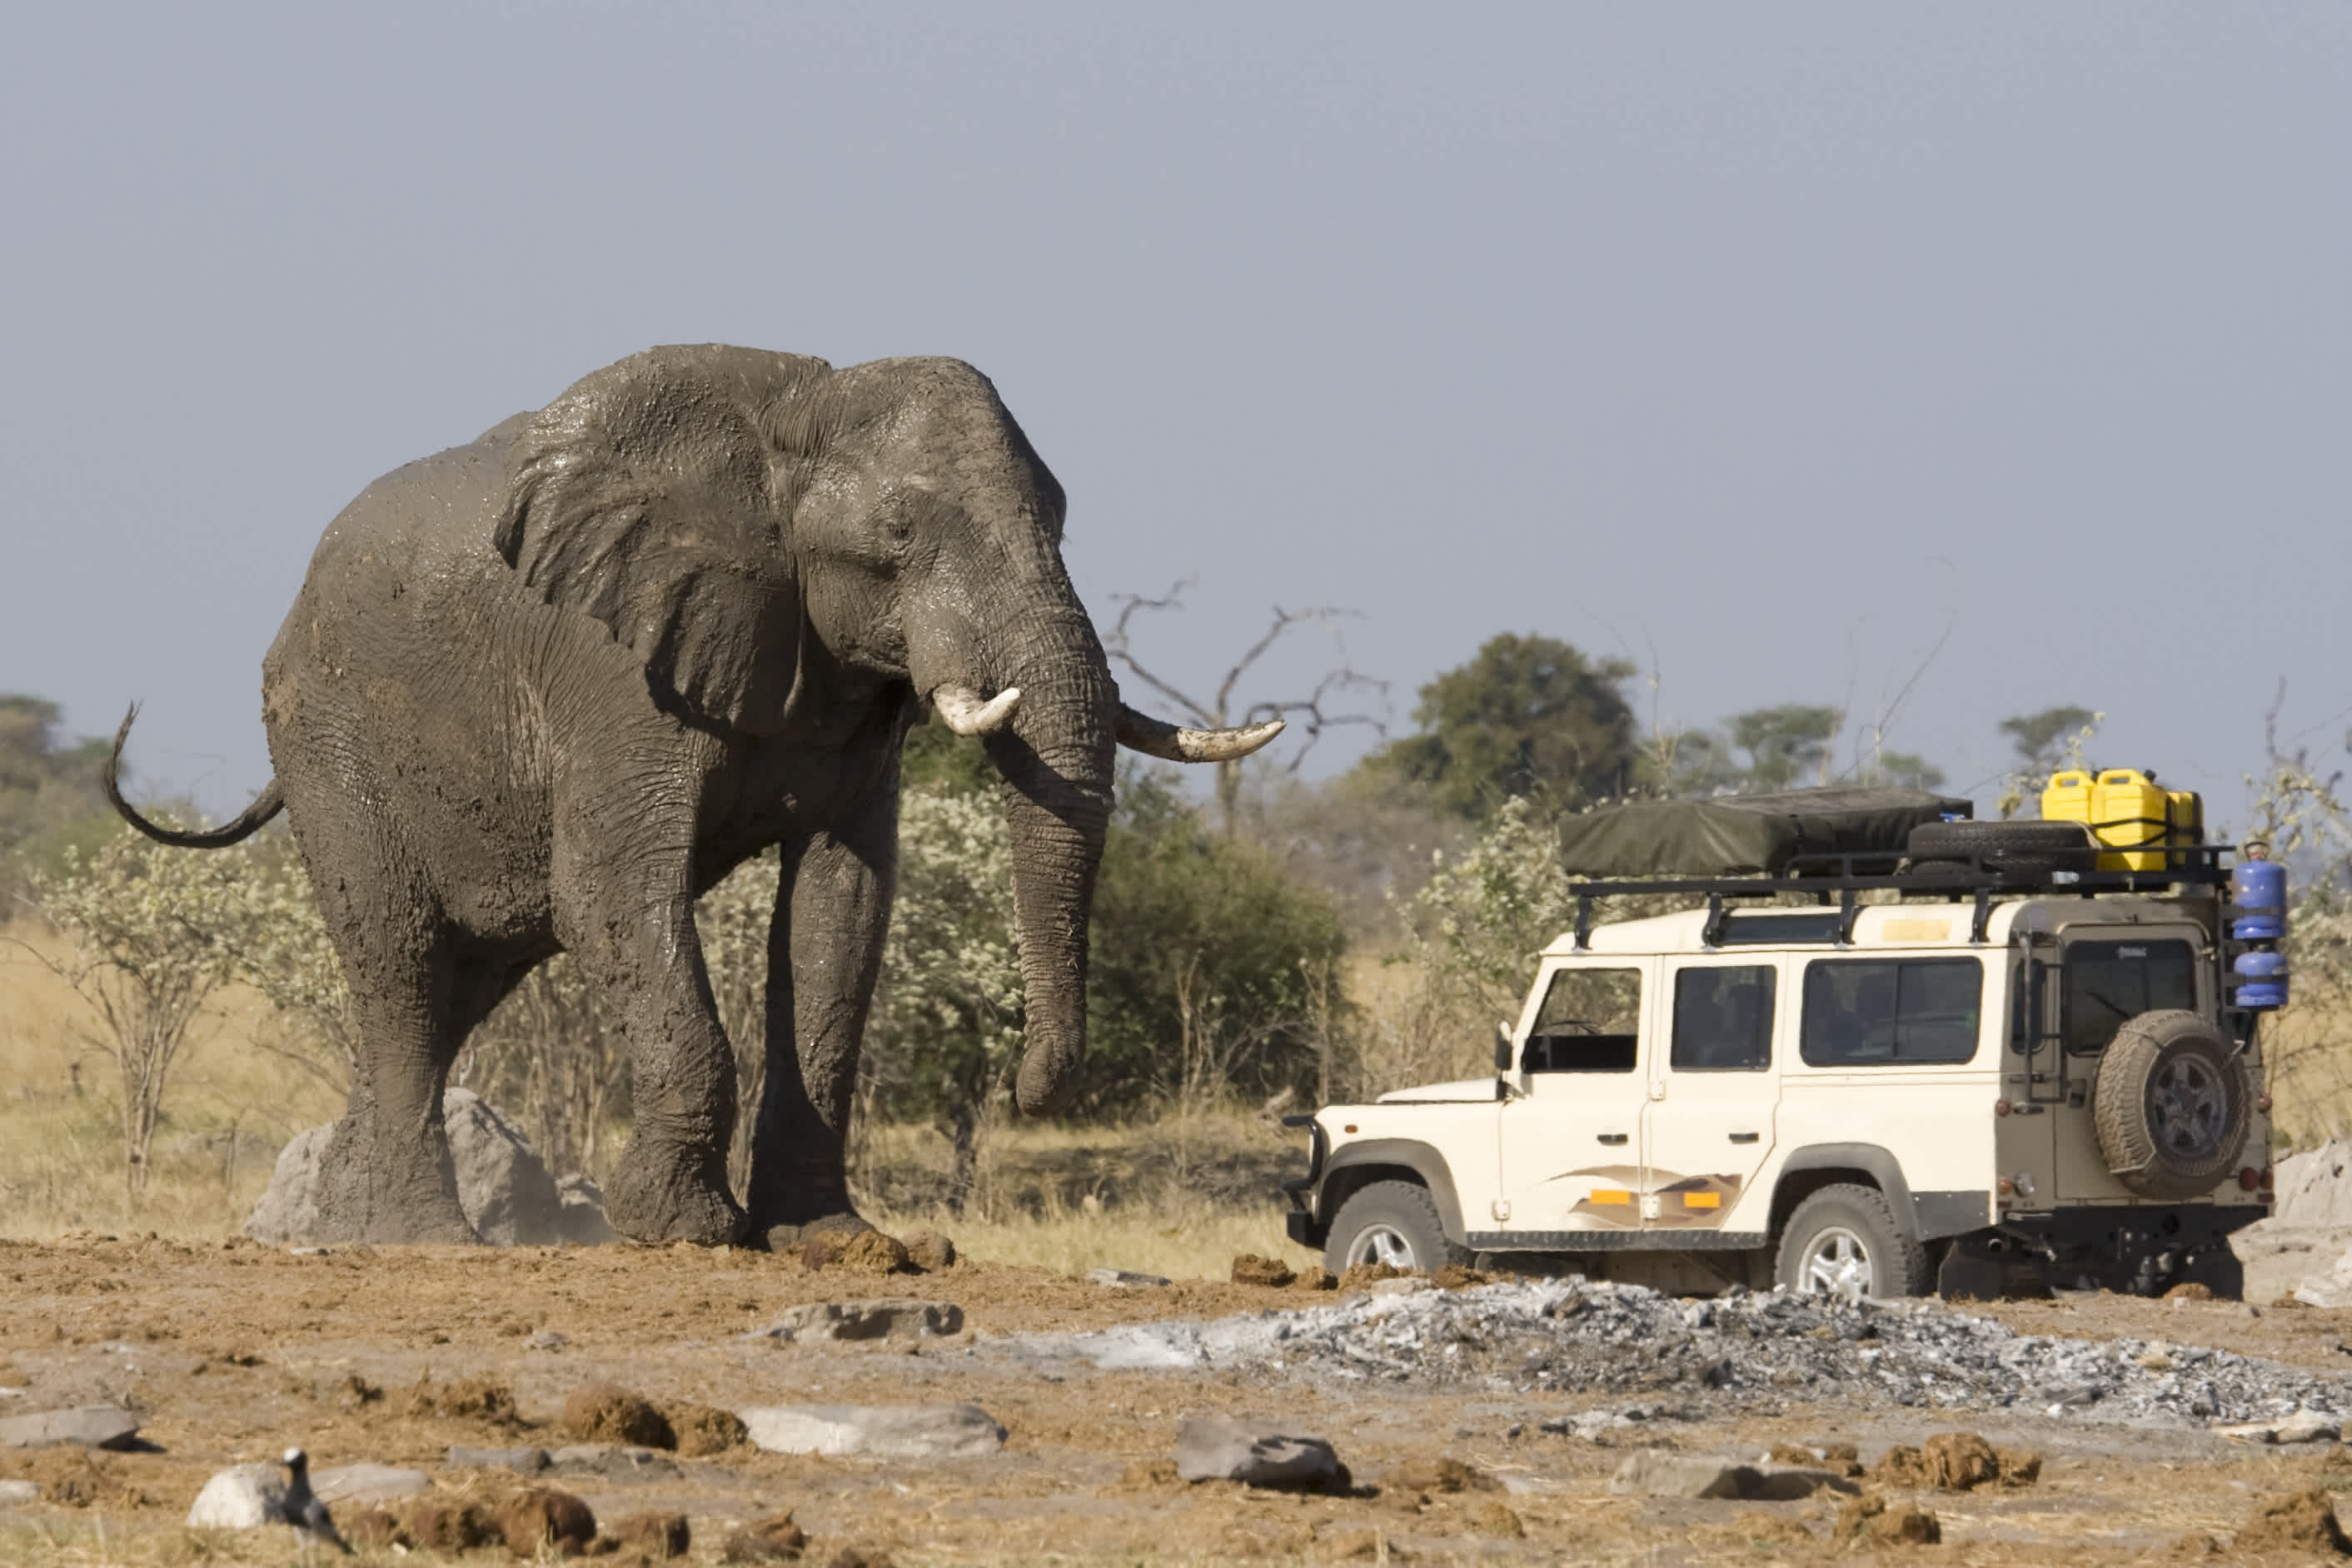 4x4 Auto in der Nähe eines großen afrikanischen Elefanten während einer Safari in Botswana.
